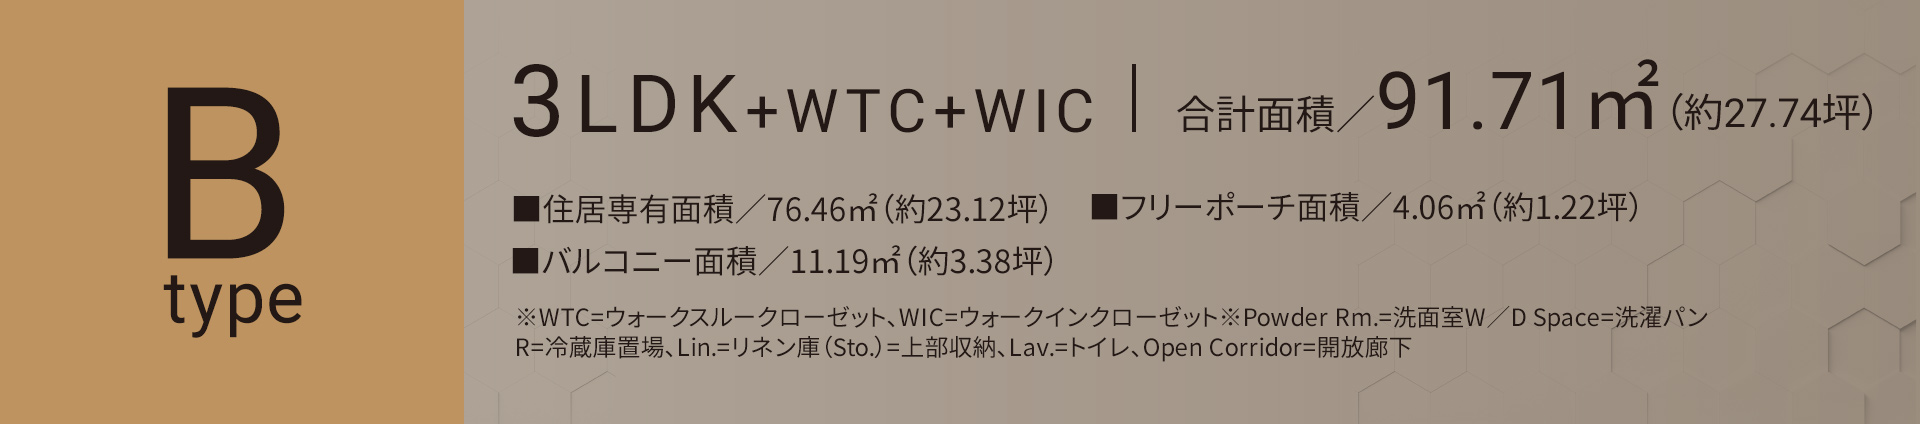 Bタイプ 3LDK+WTC+WIC 合計面積／91.71㎡（約27.74坪）■住居専有面積／76.46㎡（約23.12坪）■バルコニー面積／11.19㎡（約3.38坪）■フリーポーチ面積／4.06㎡（約1.22坪）